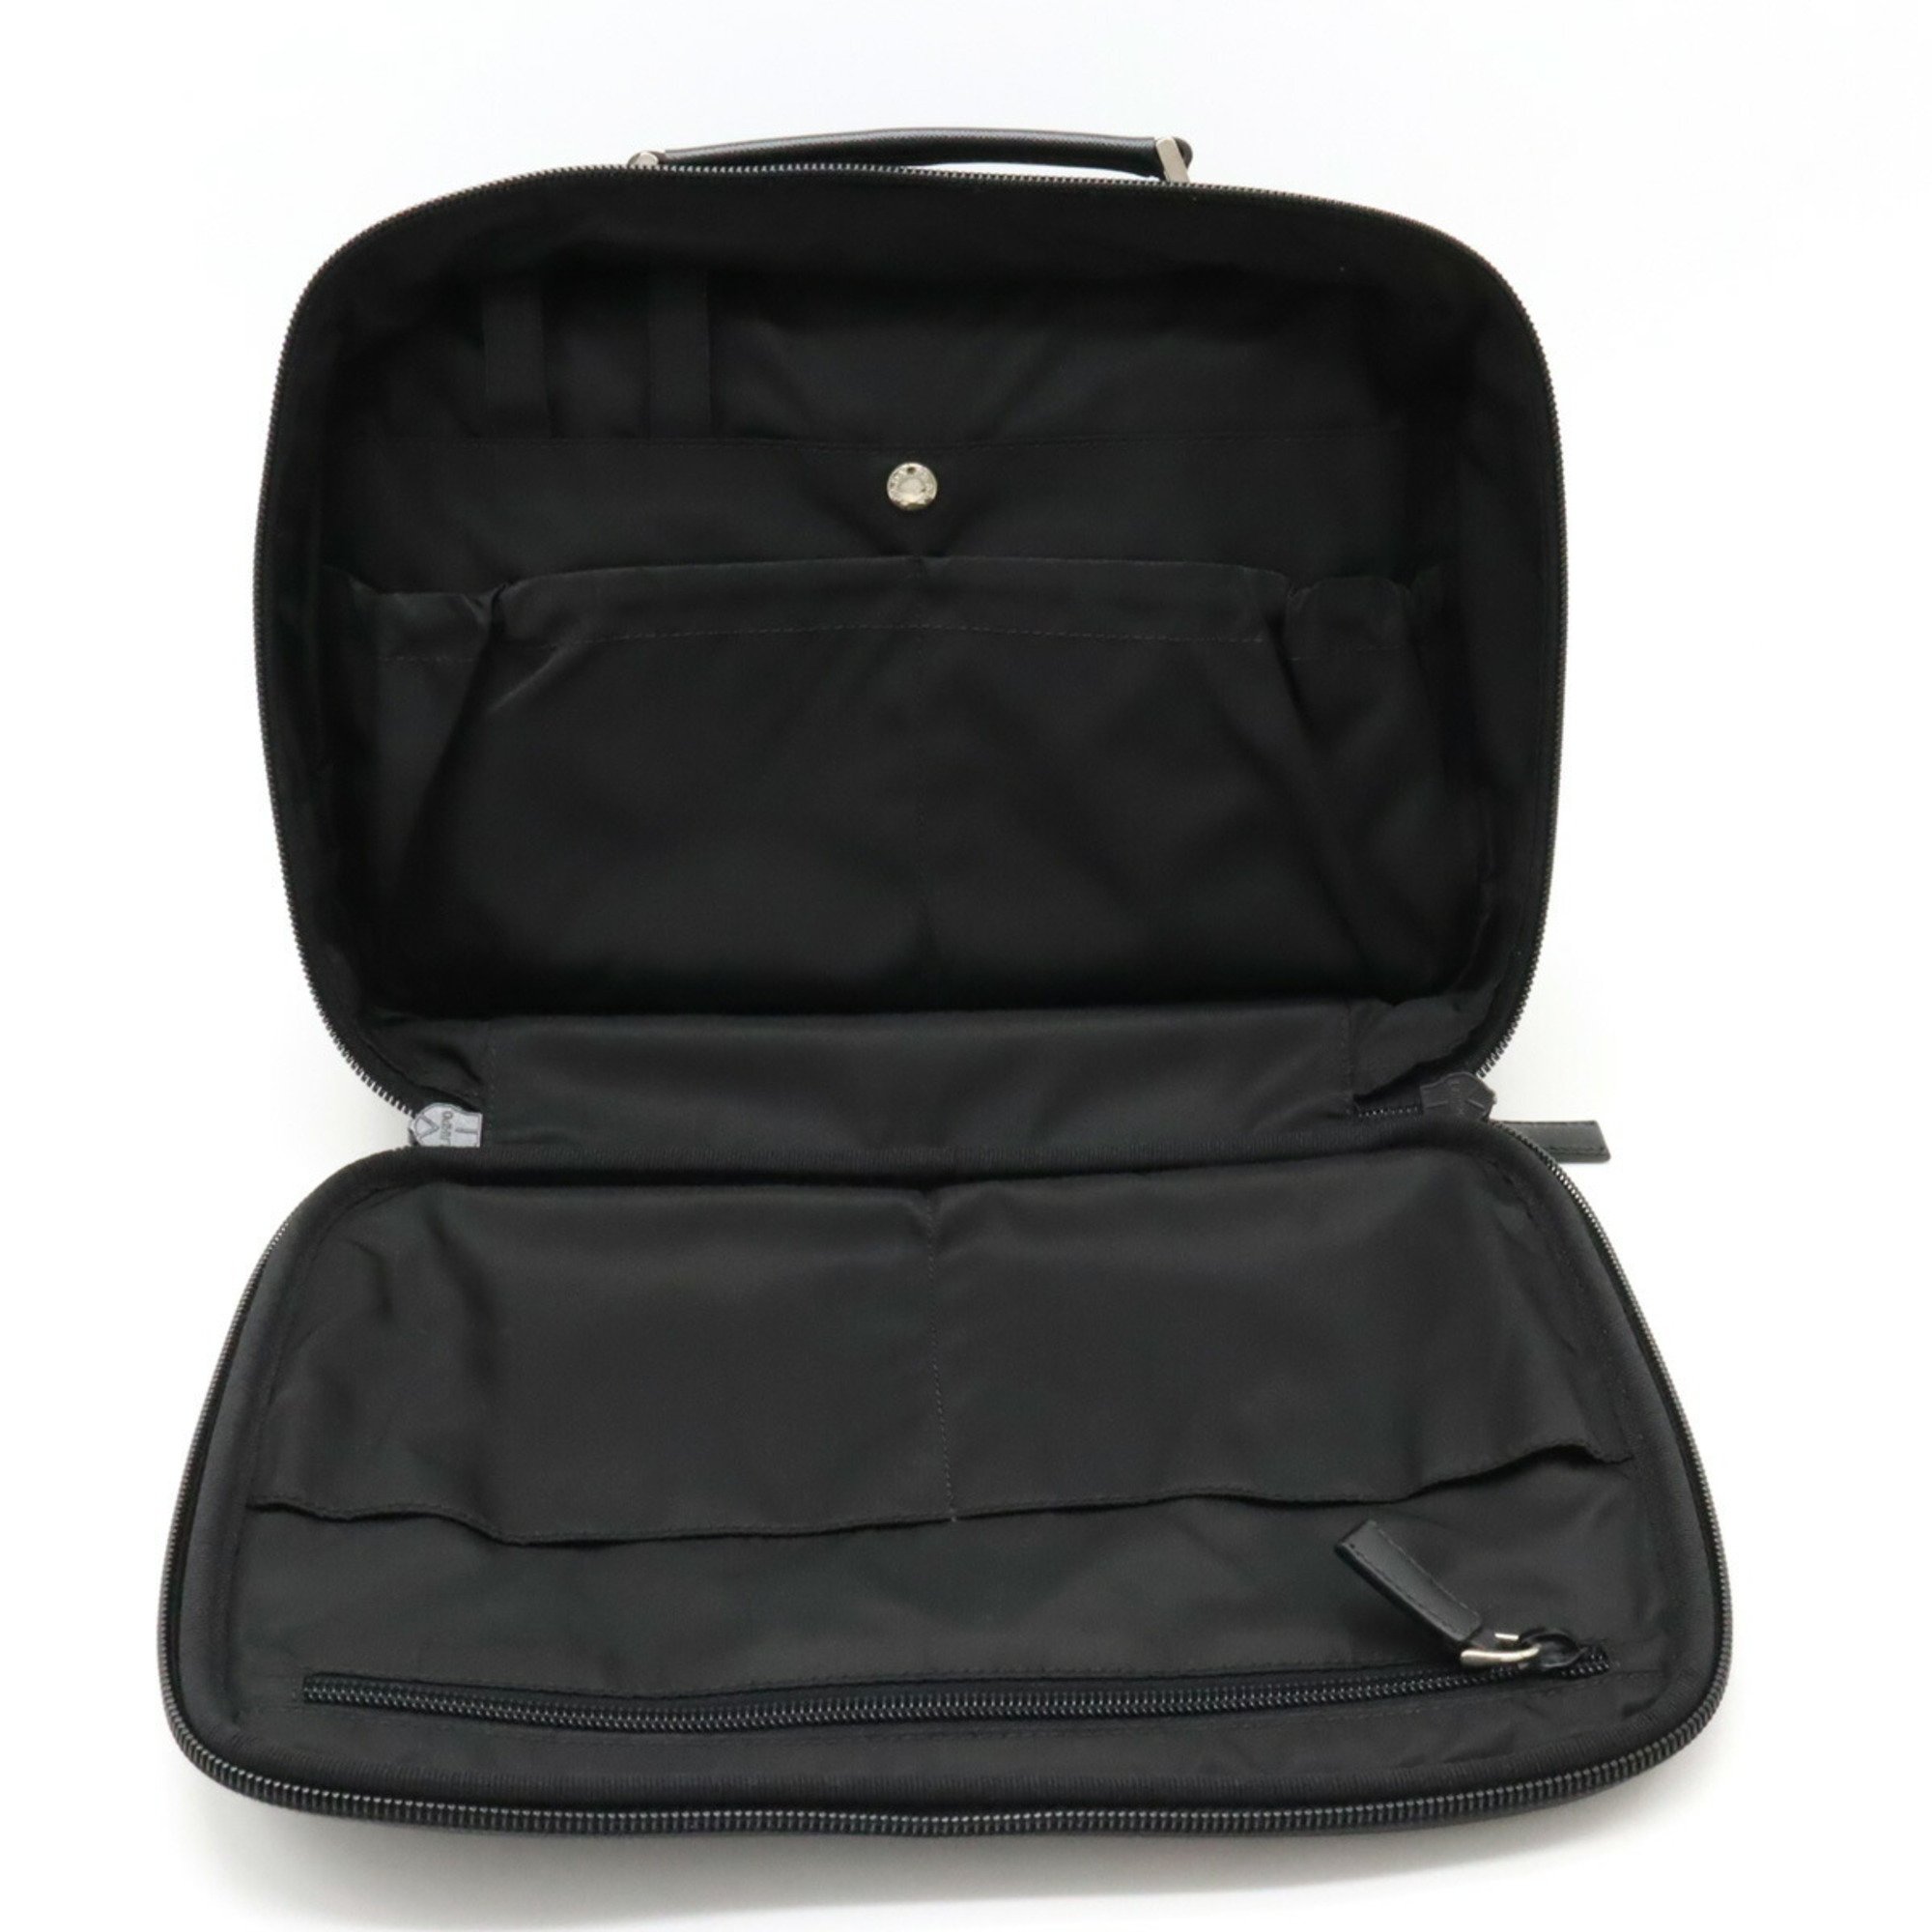 PRADA VIAGGIO Vanity Bag, Handbag, Travel Nylon, Leather, NERO, Black, VA0409